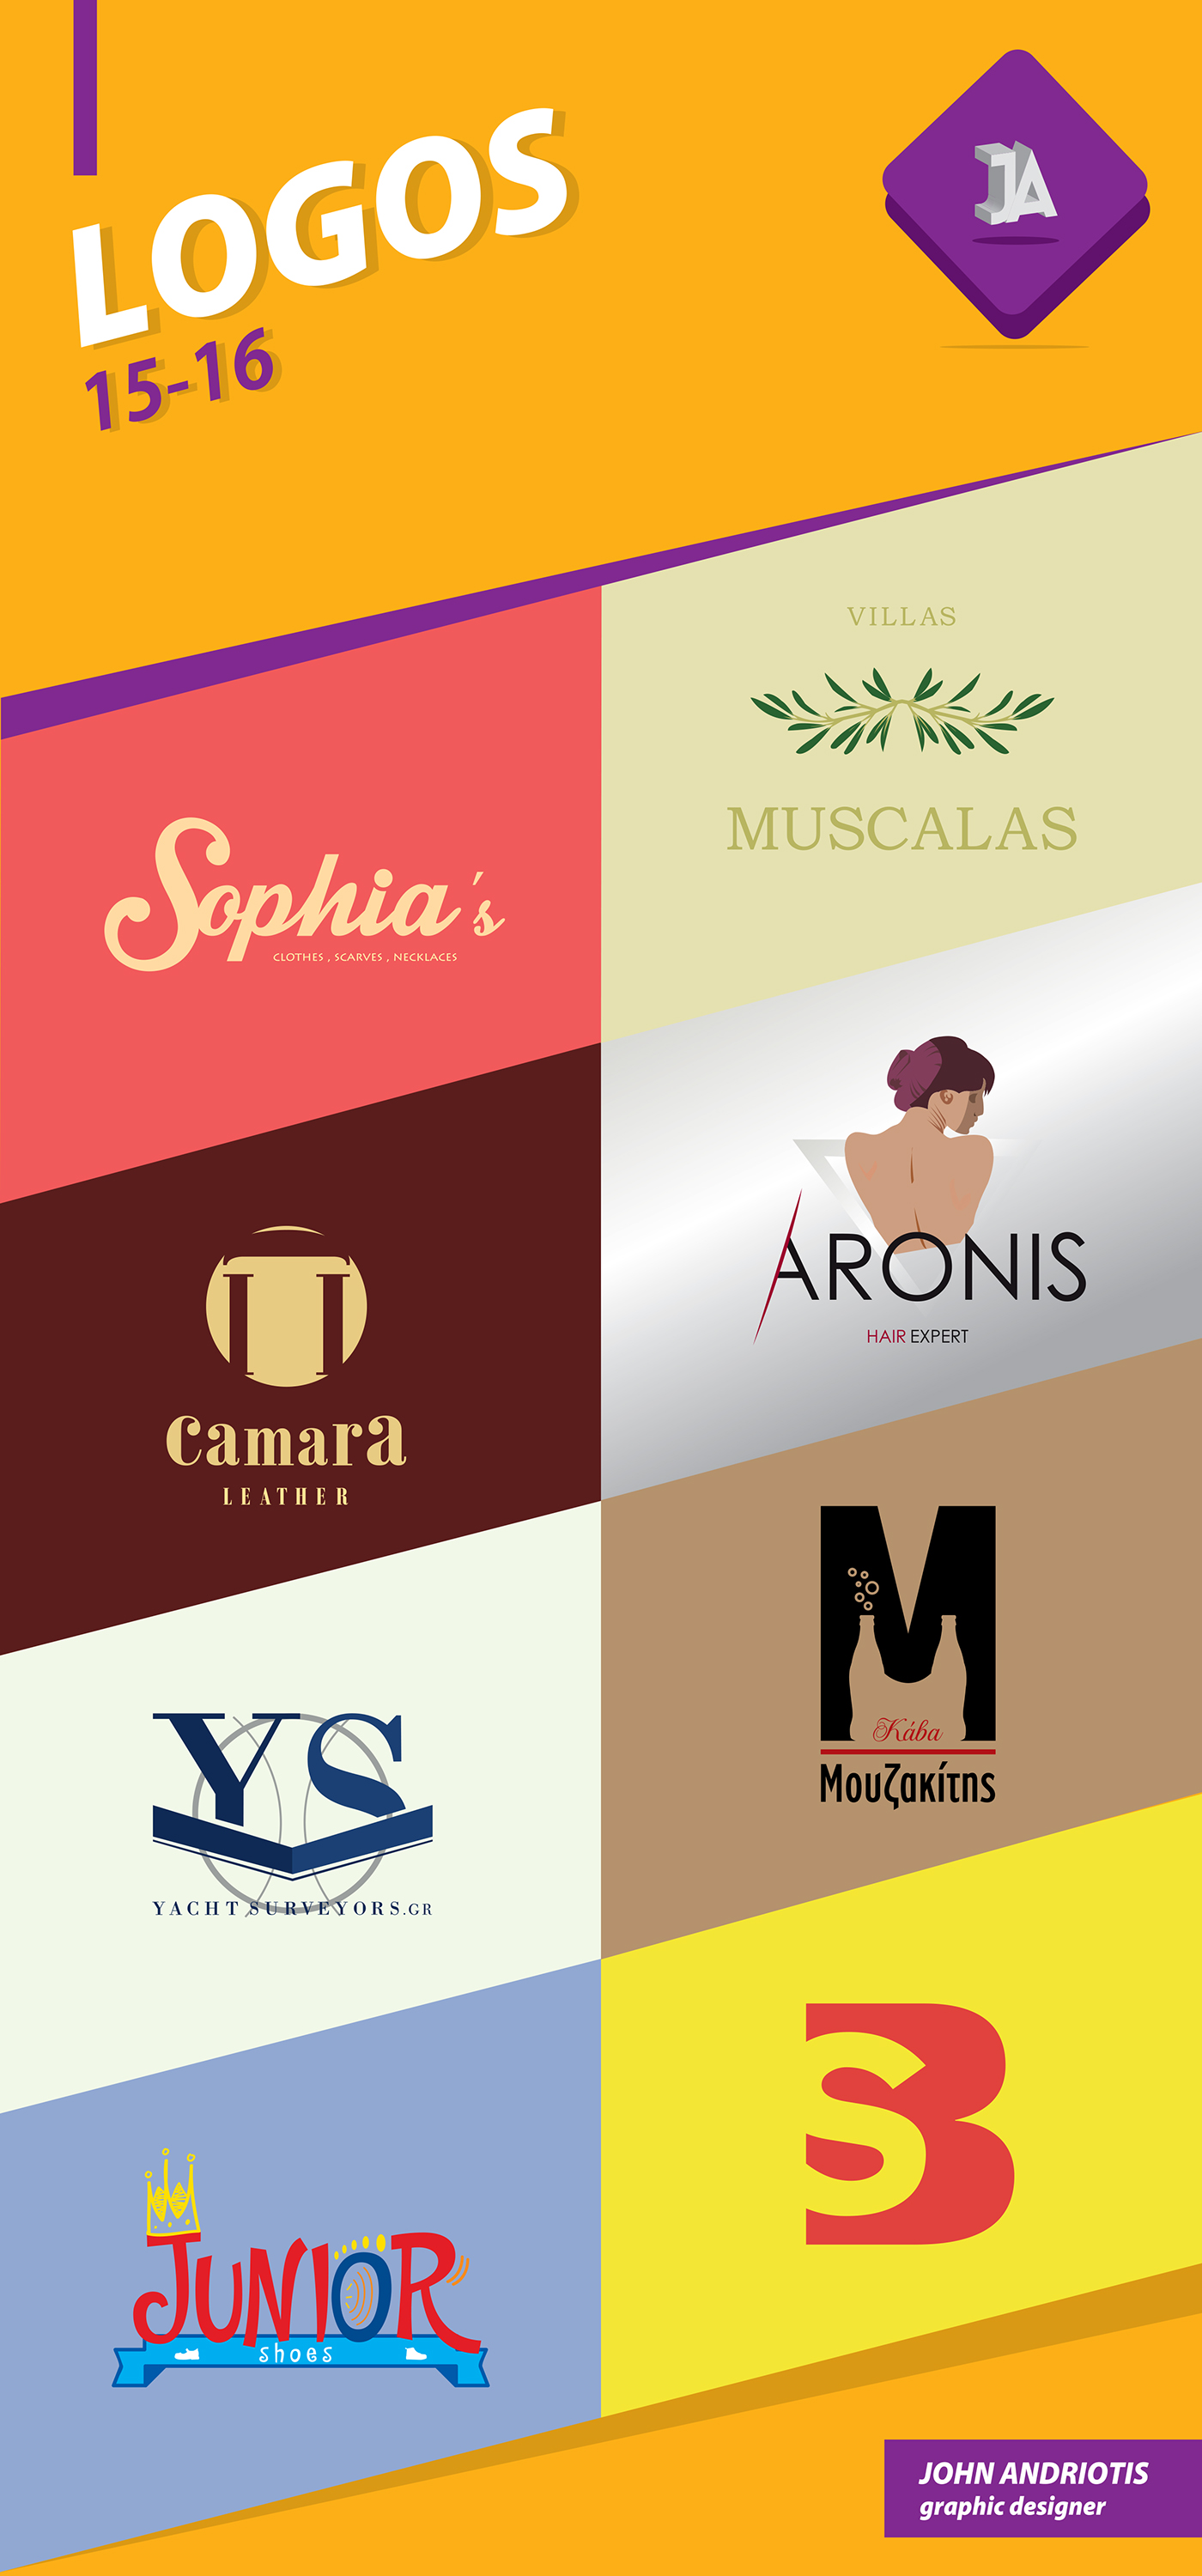 Andriotis Giannis Logos Logotypes 15-16 ja